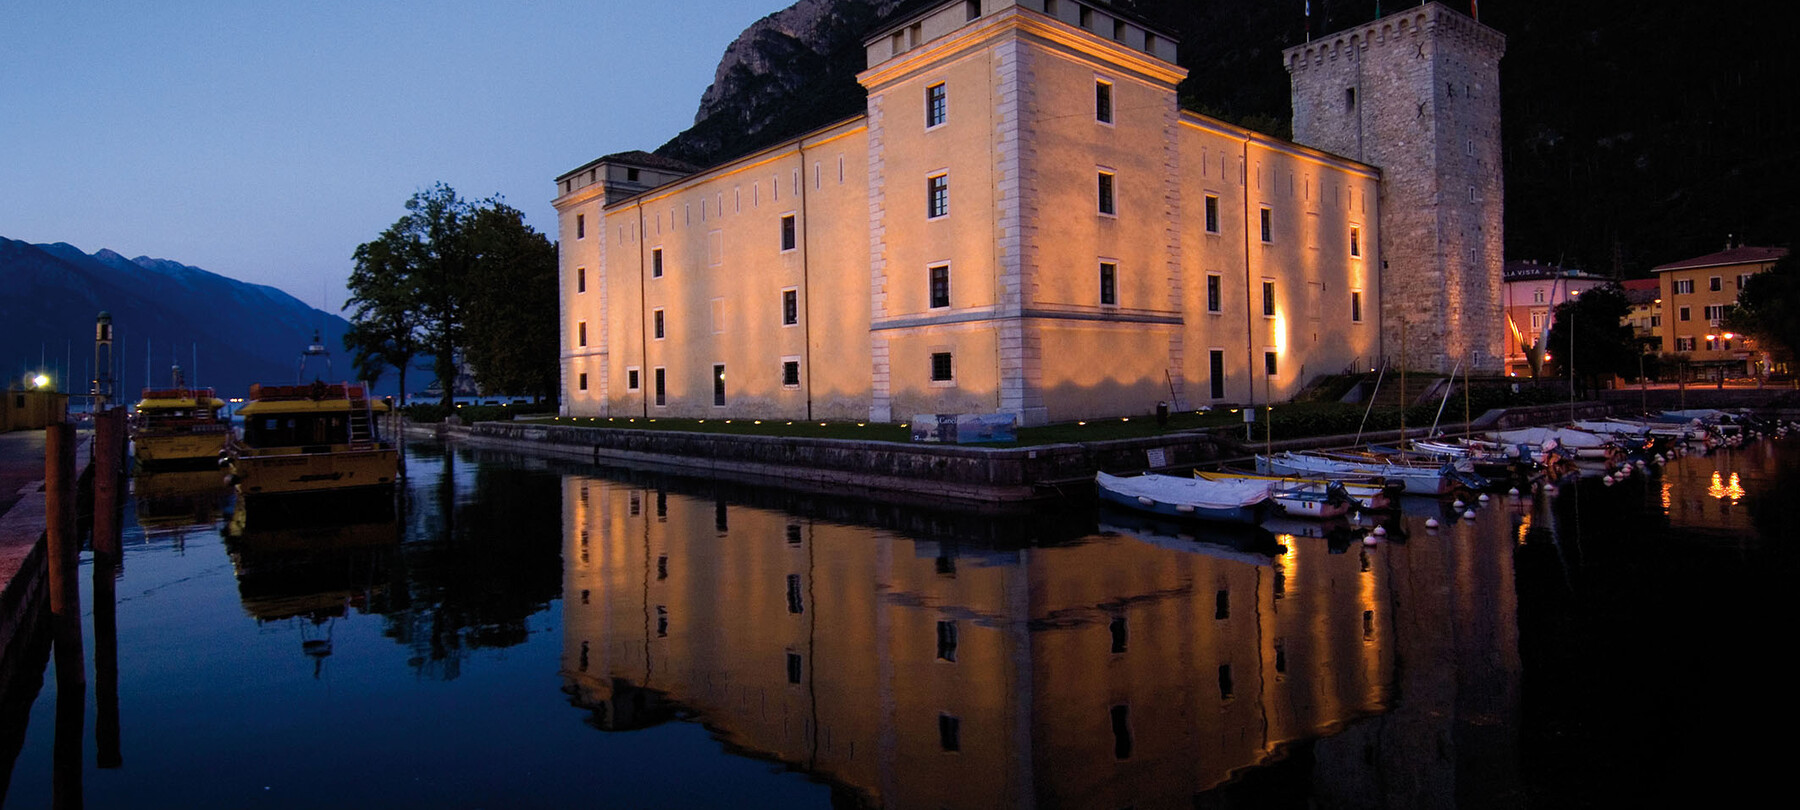 Riva del Garda Italy - Rocca di Riva, home of the Museo dell’Alto Garda, and a Picture Gallery